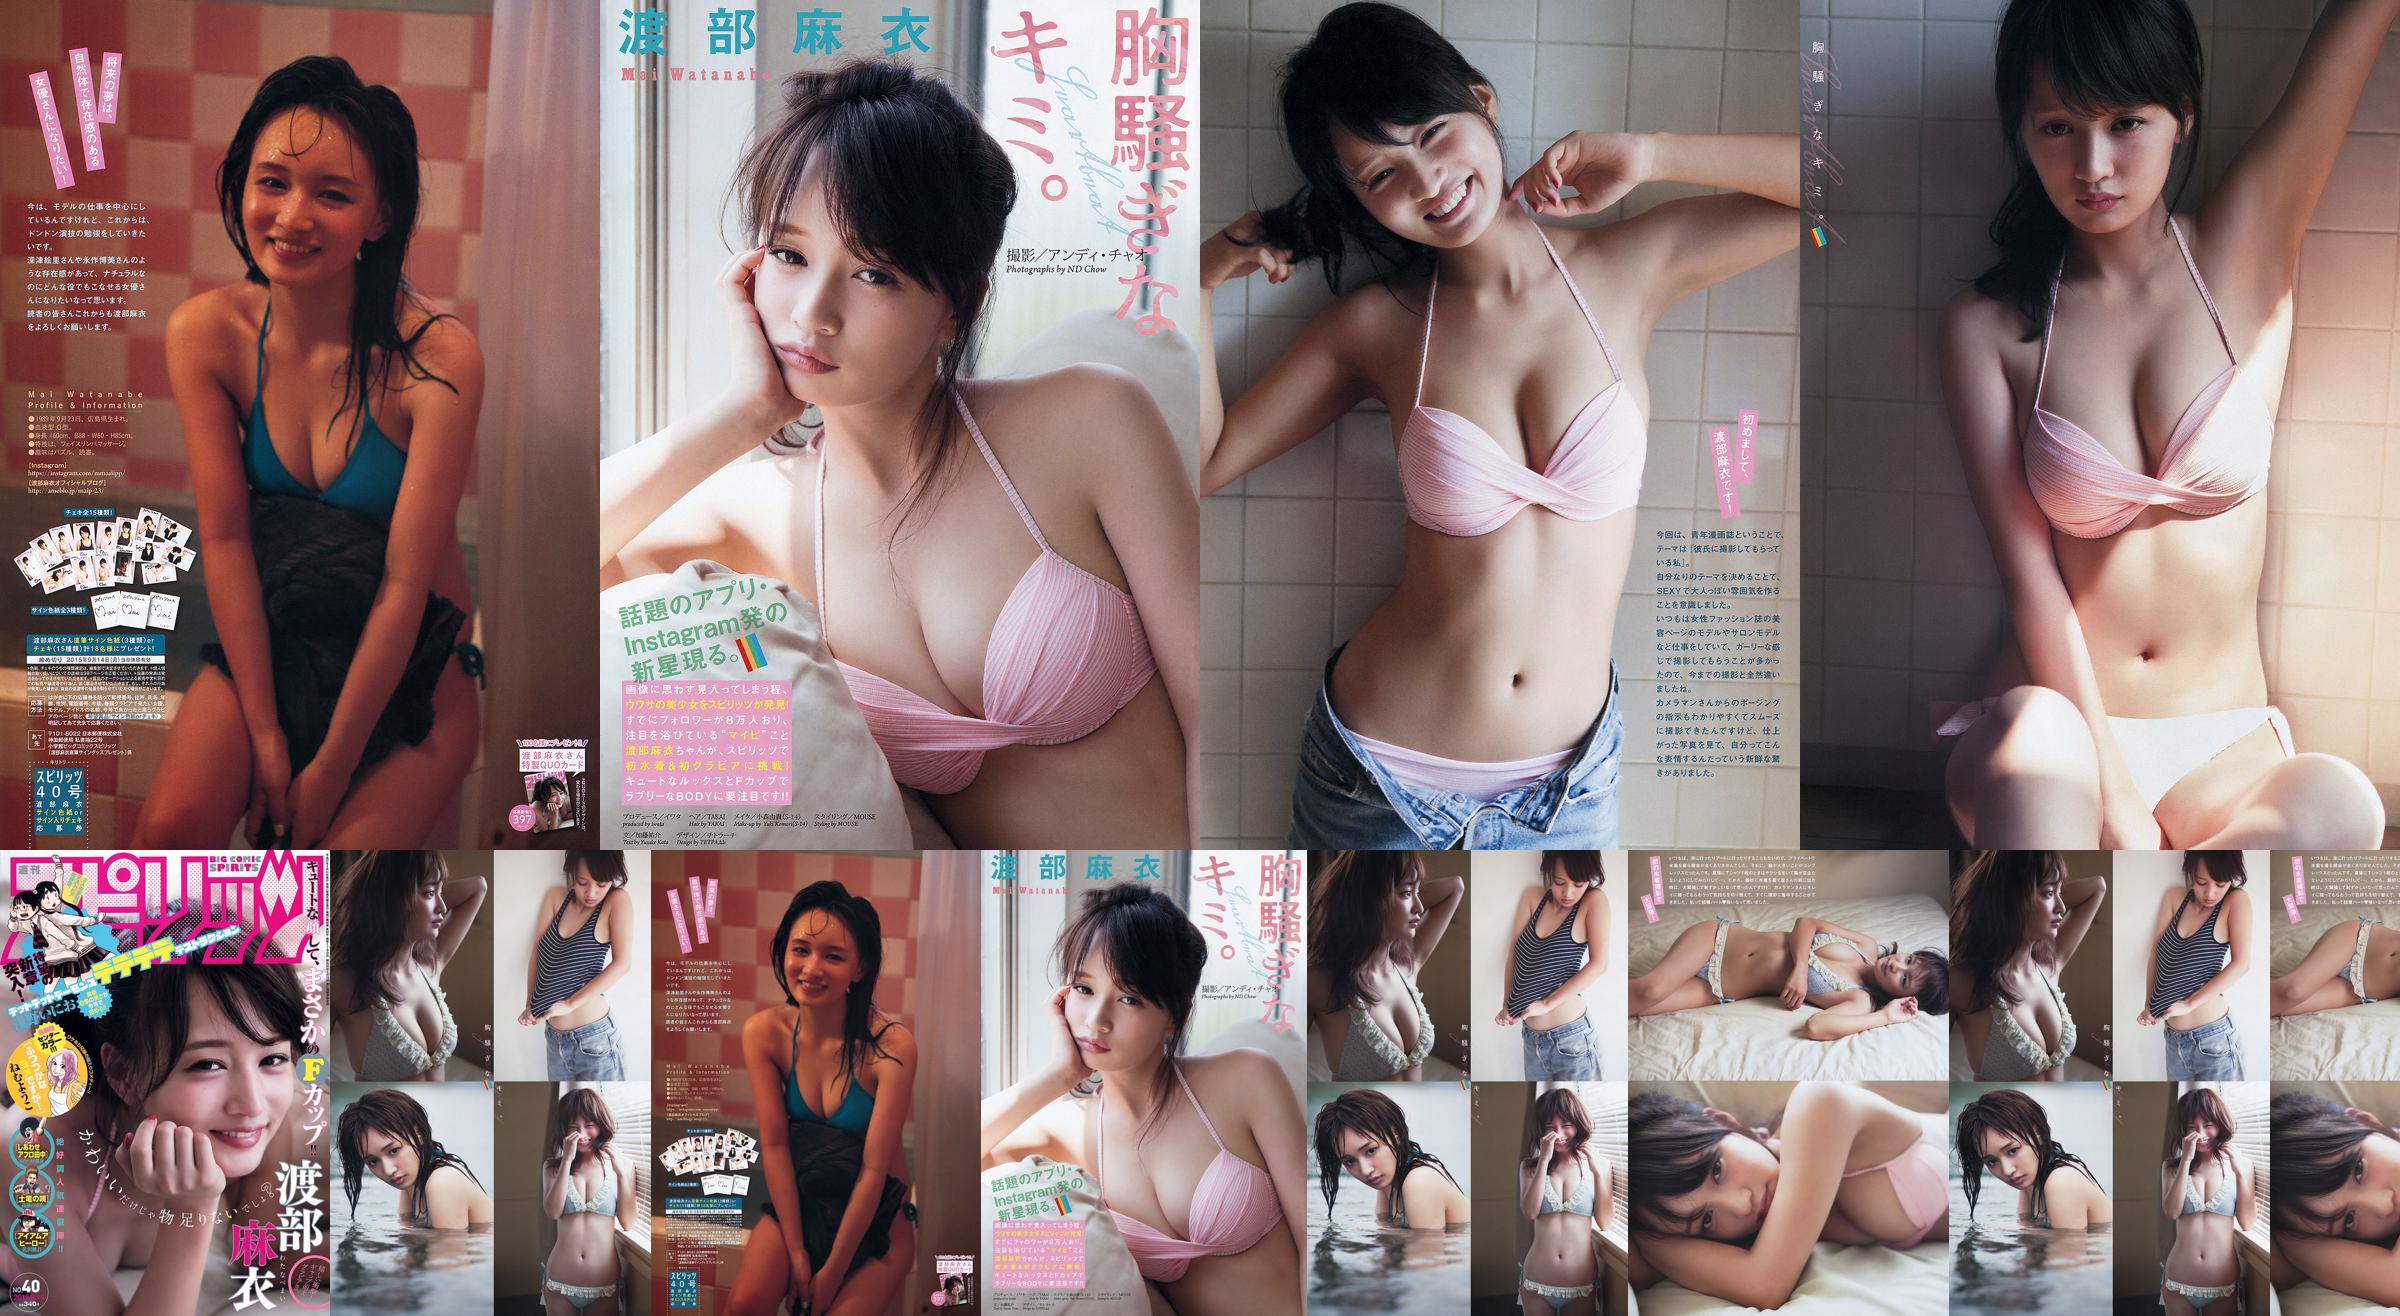 [Weekly Big Comic Spirits] Watanabe Mai 2015 No.40 Photo Magazine No.34e7c4 Page 1